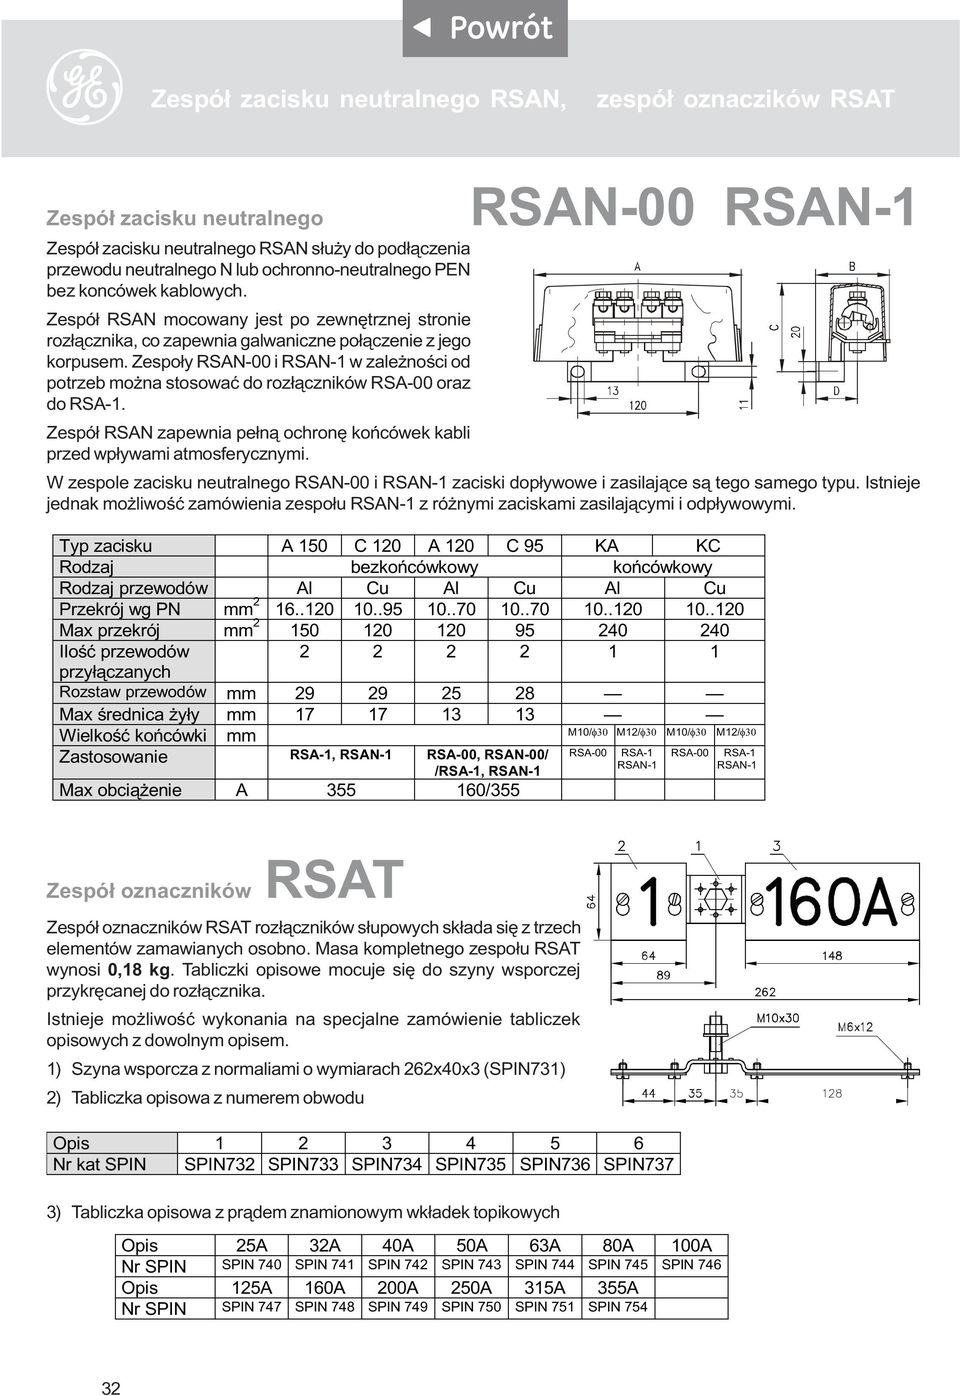 Zespo³y RSAN-00 i RSAN-1 w zale noœci od potrzeb mo na stosowaæ do roz³¹czników RSA-00 oraz do RSA-1. Zespó³ RSAN zapewnia pe³n¹ ochronê koñcówek kabli przed wp³ywami atmosferycznymi.